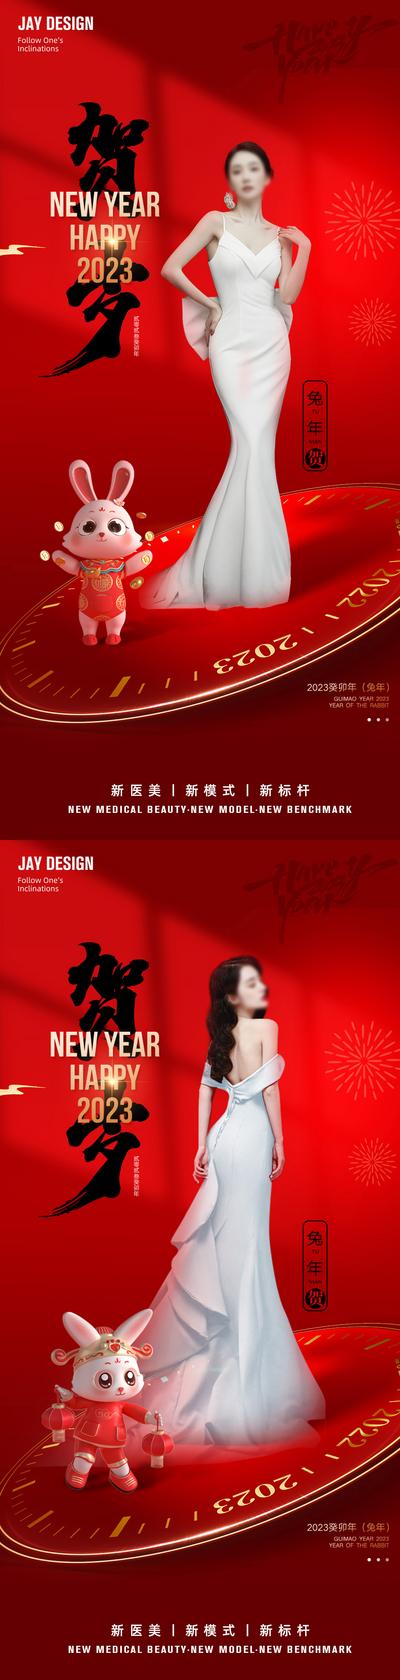 【南门网】海报 医美 中式 人物 中国风 质感 2023 元旦 兔年 红色 时尚 传统节日 新年